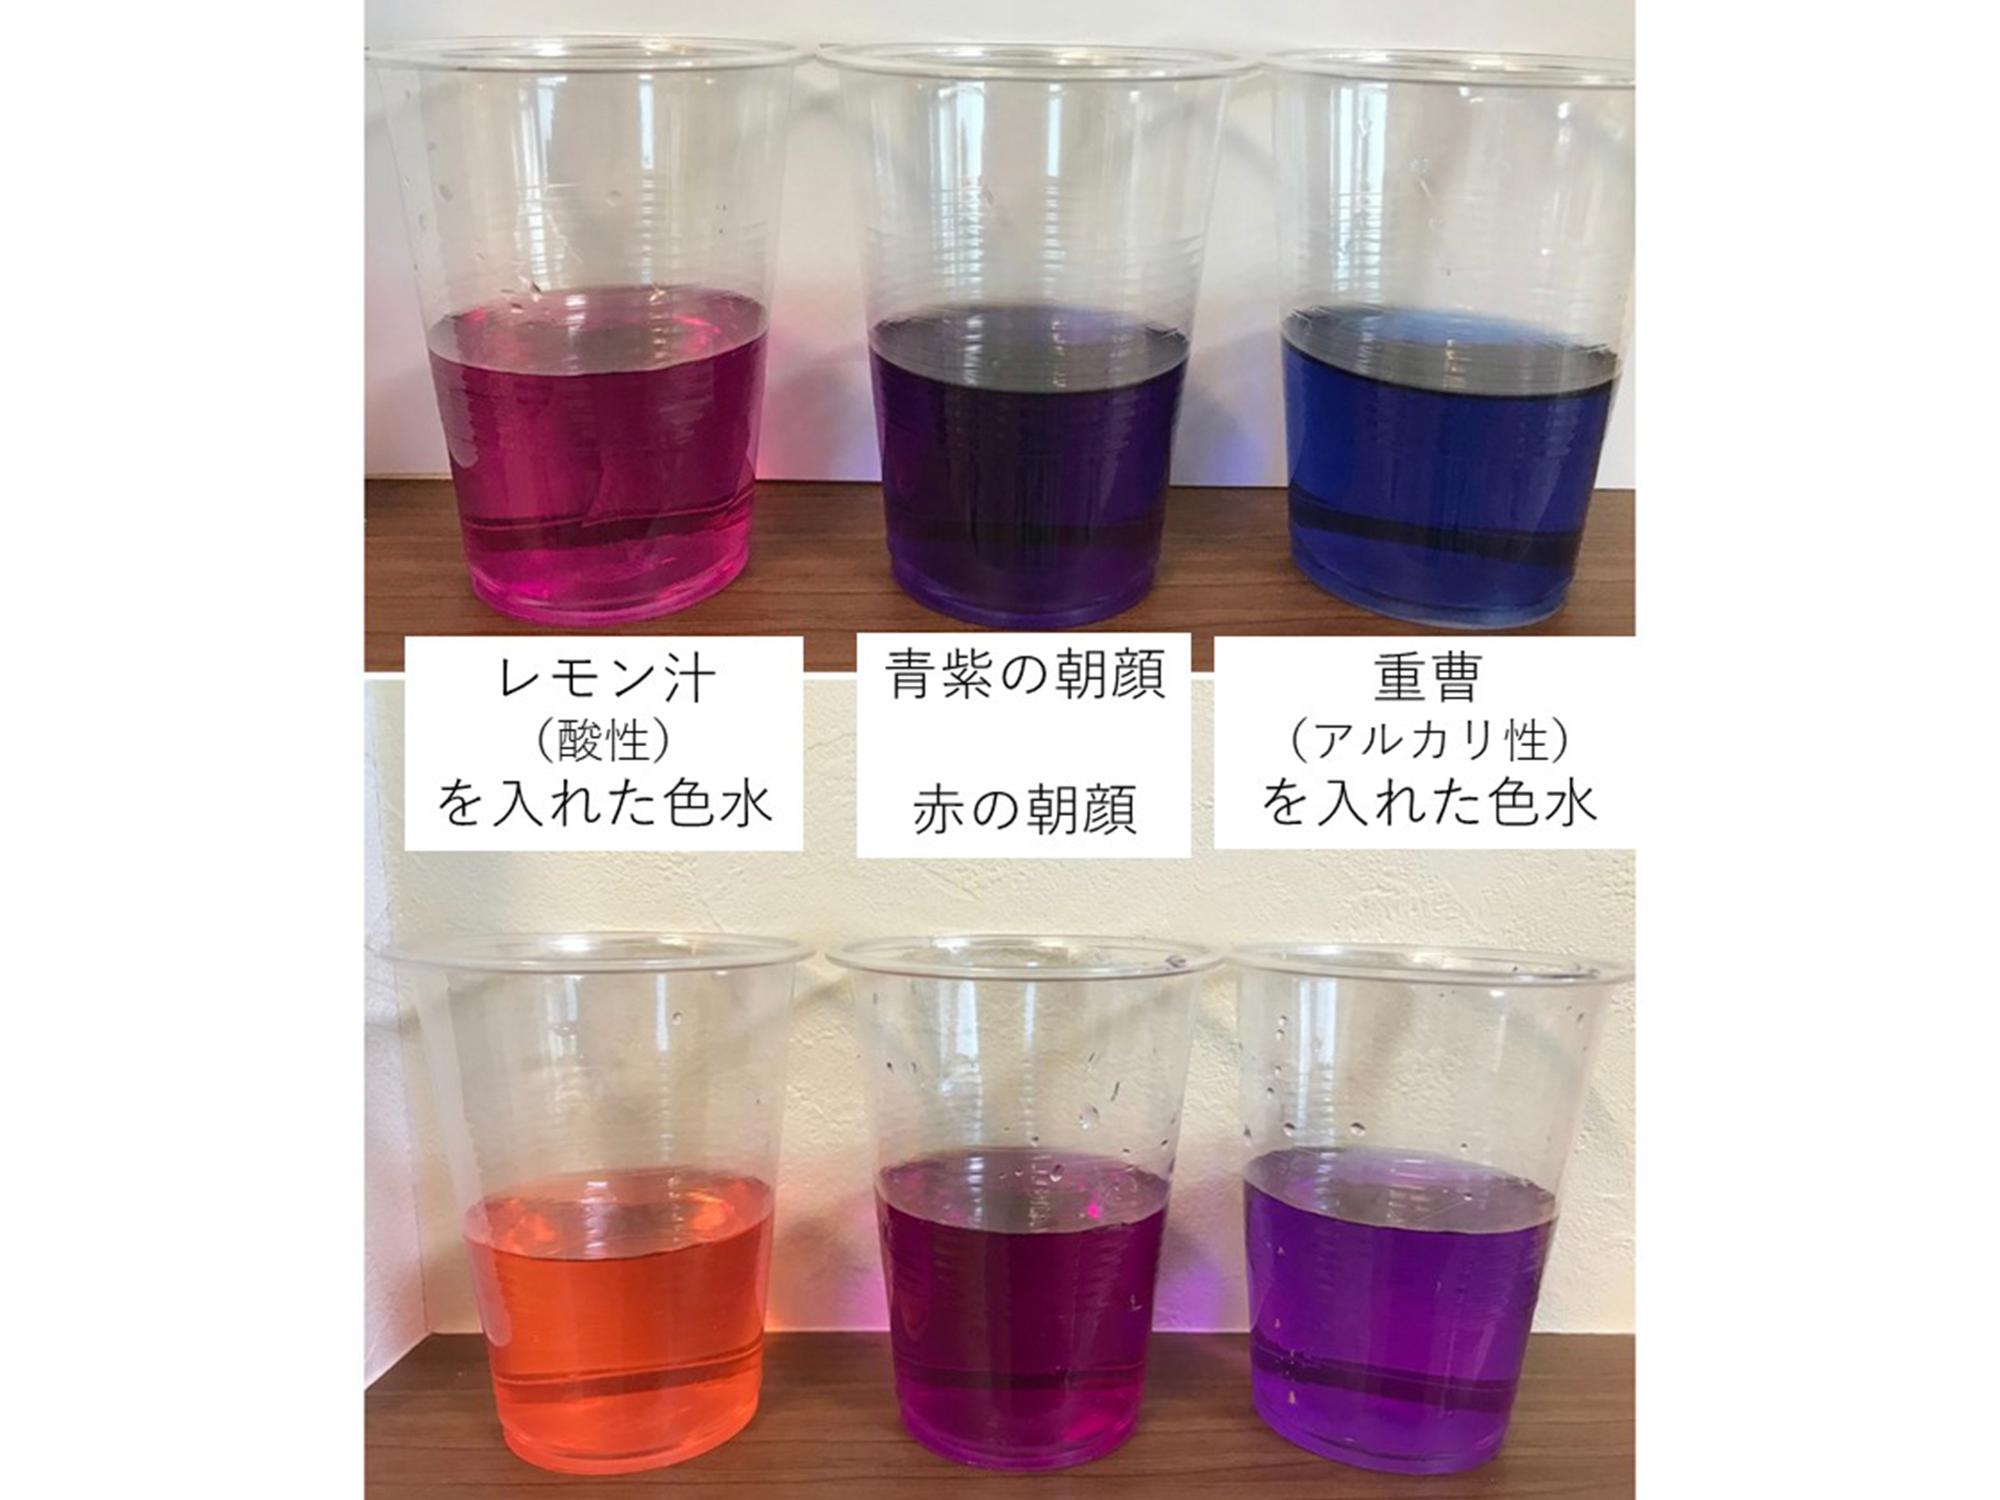 青紫色、赤色それぞれ花で作った色水にレモン汁、重曹をいれたもの。どれも綺麗な色です